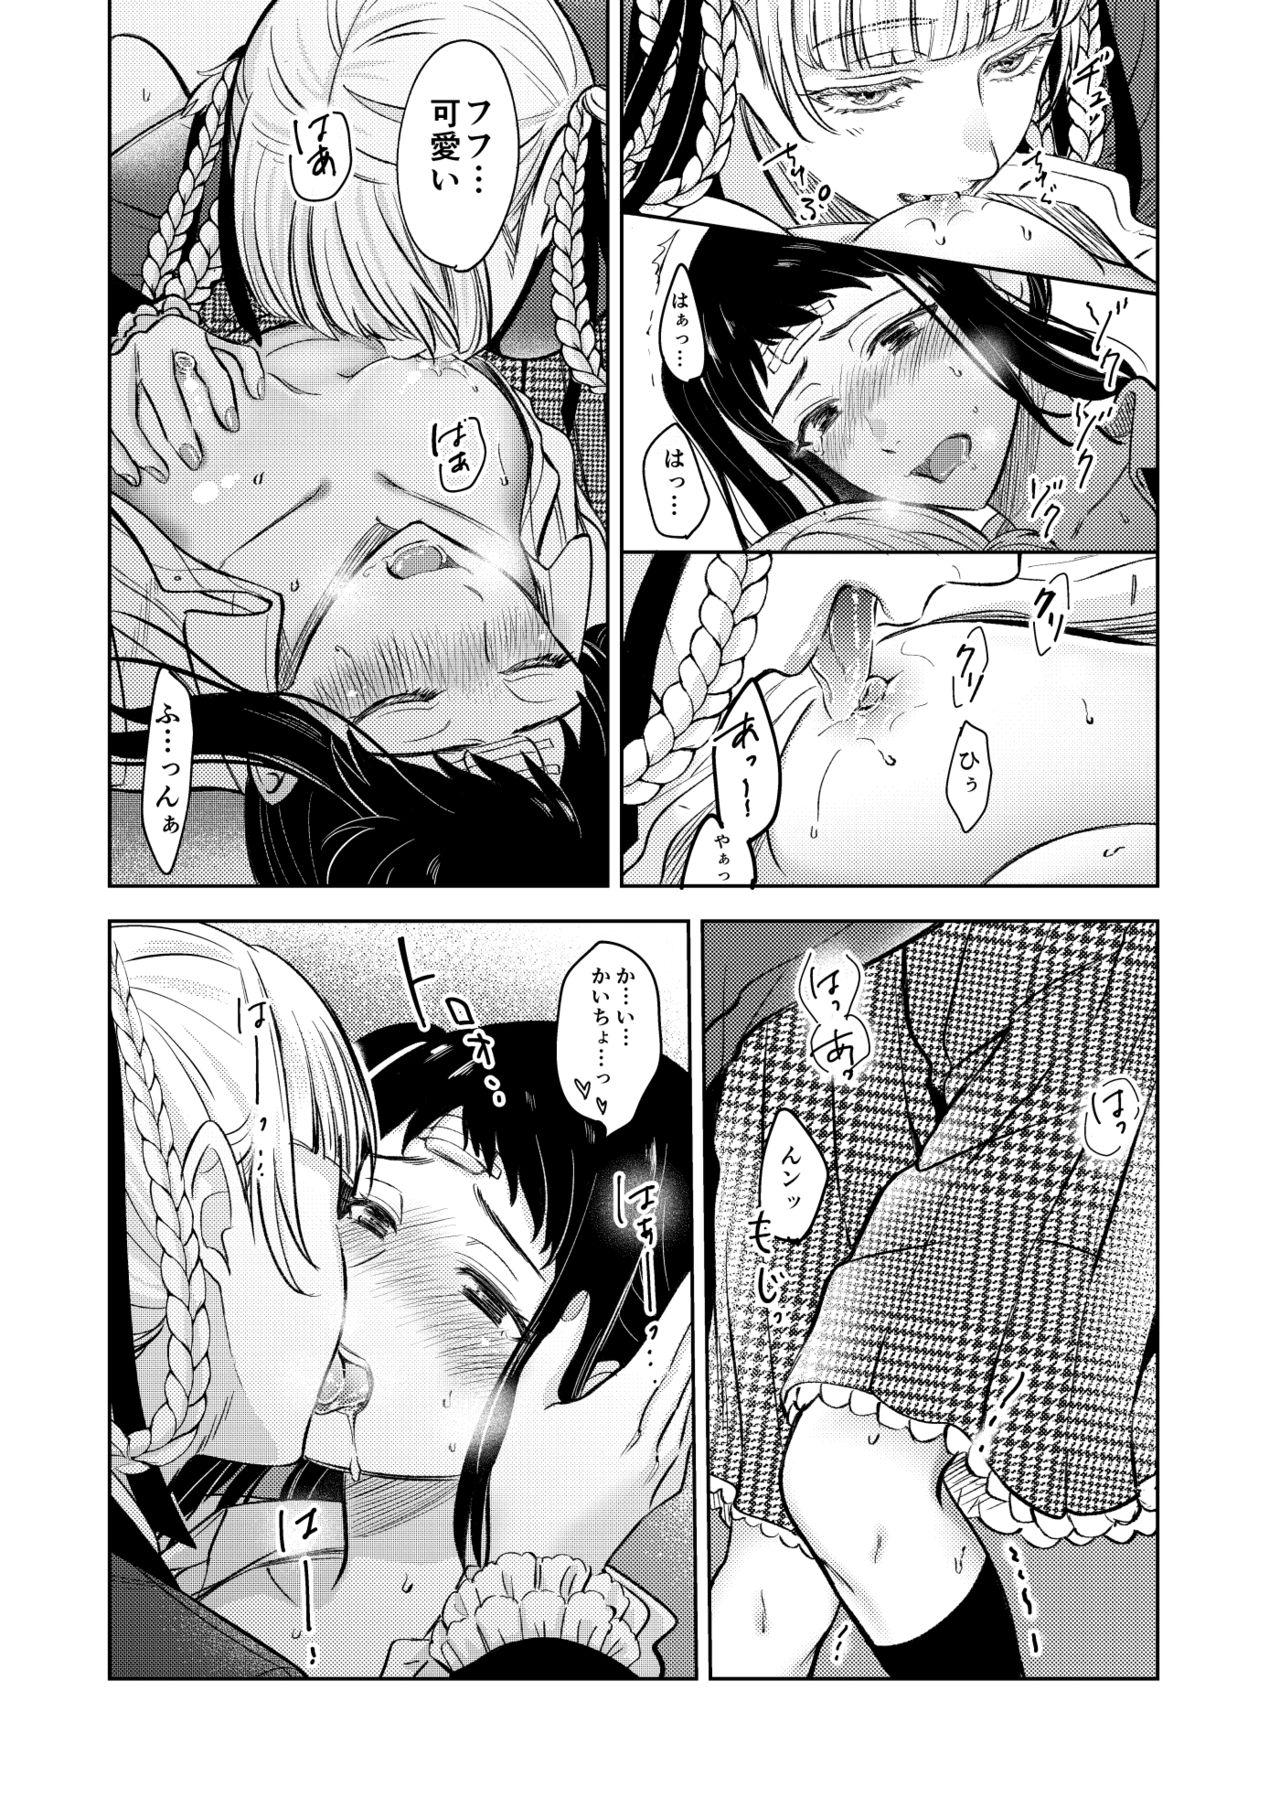 Ejaculations 賭ケ/きらさやの漫画 - Kakegurui Gay Trimmed - Page 10